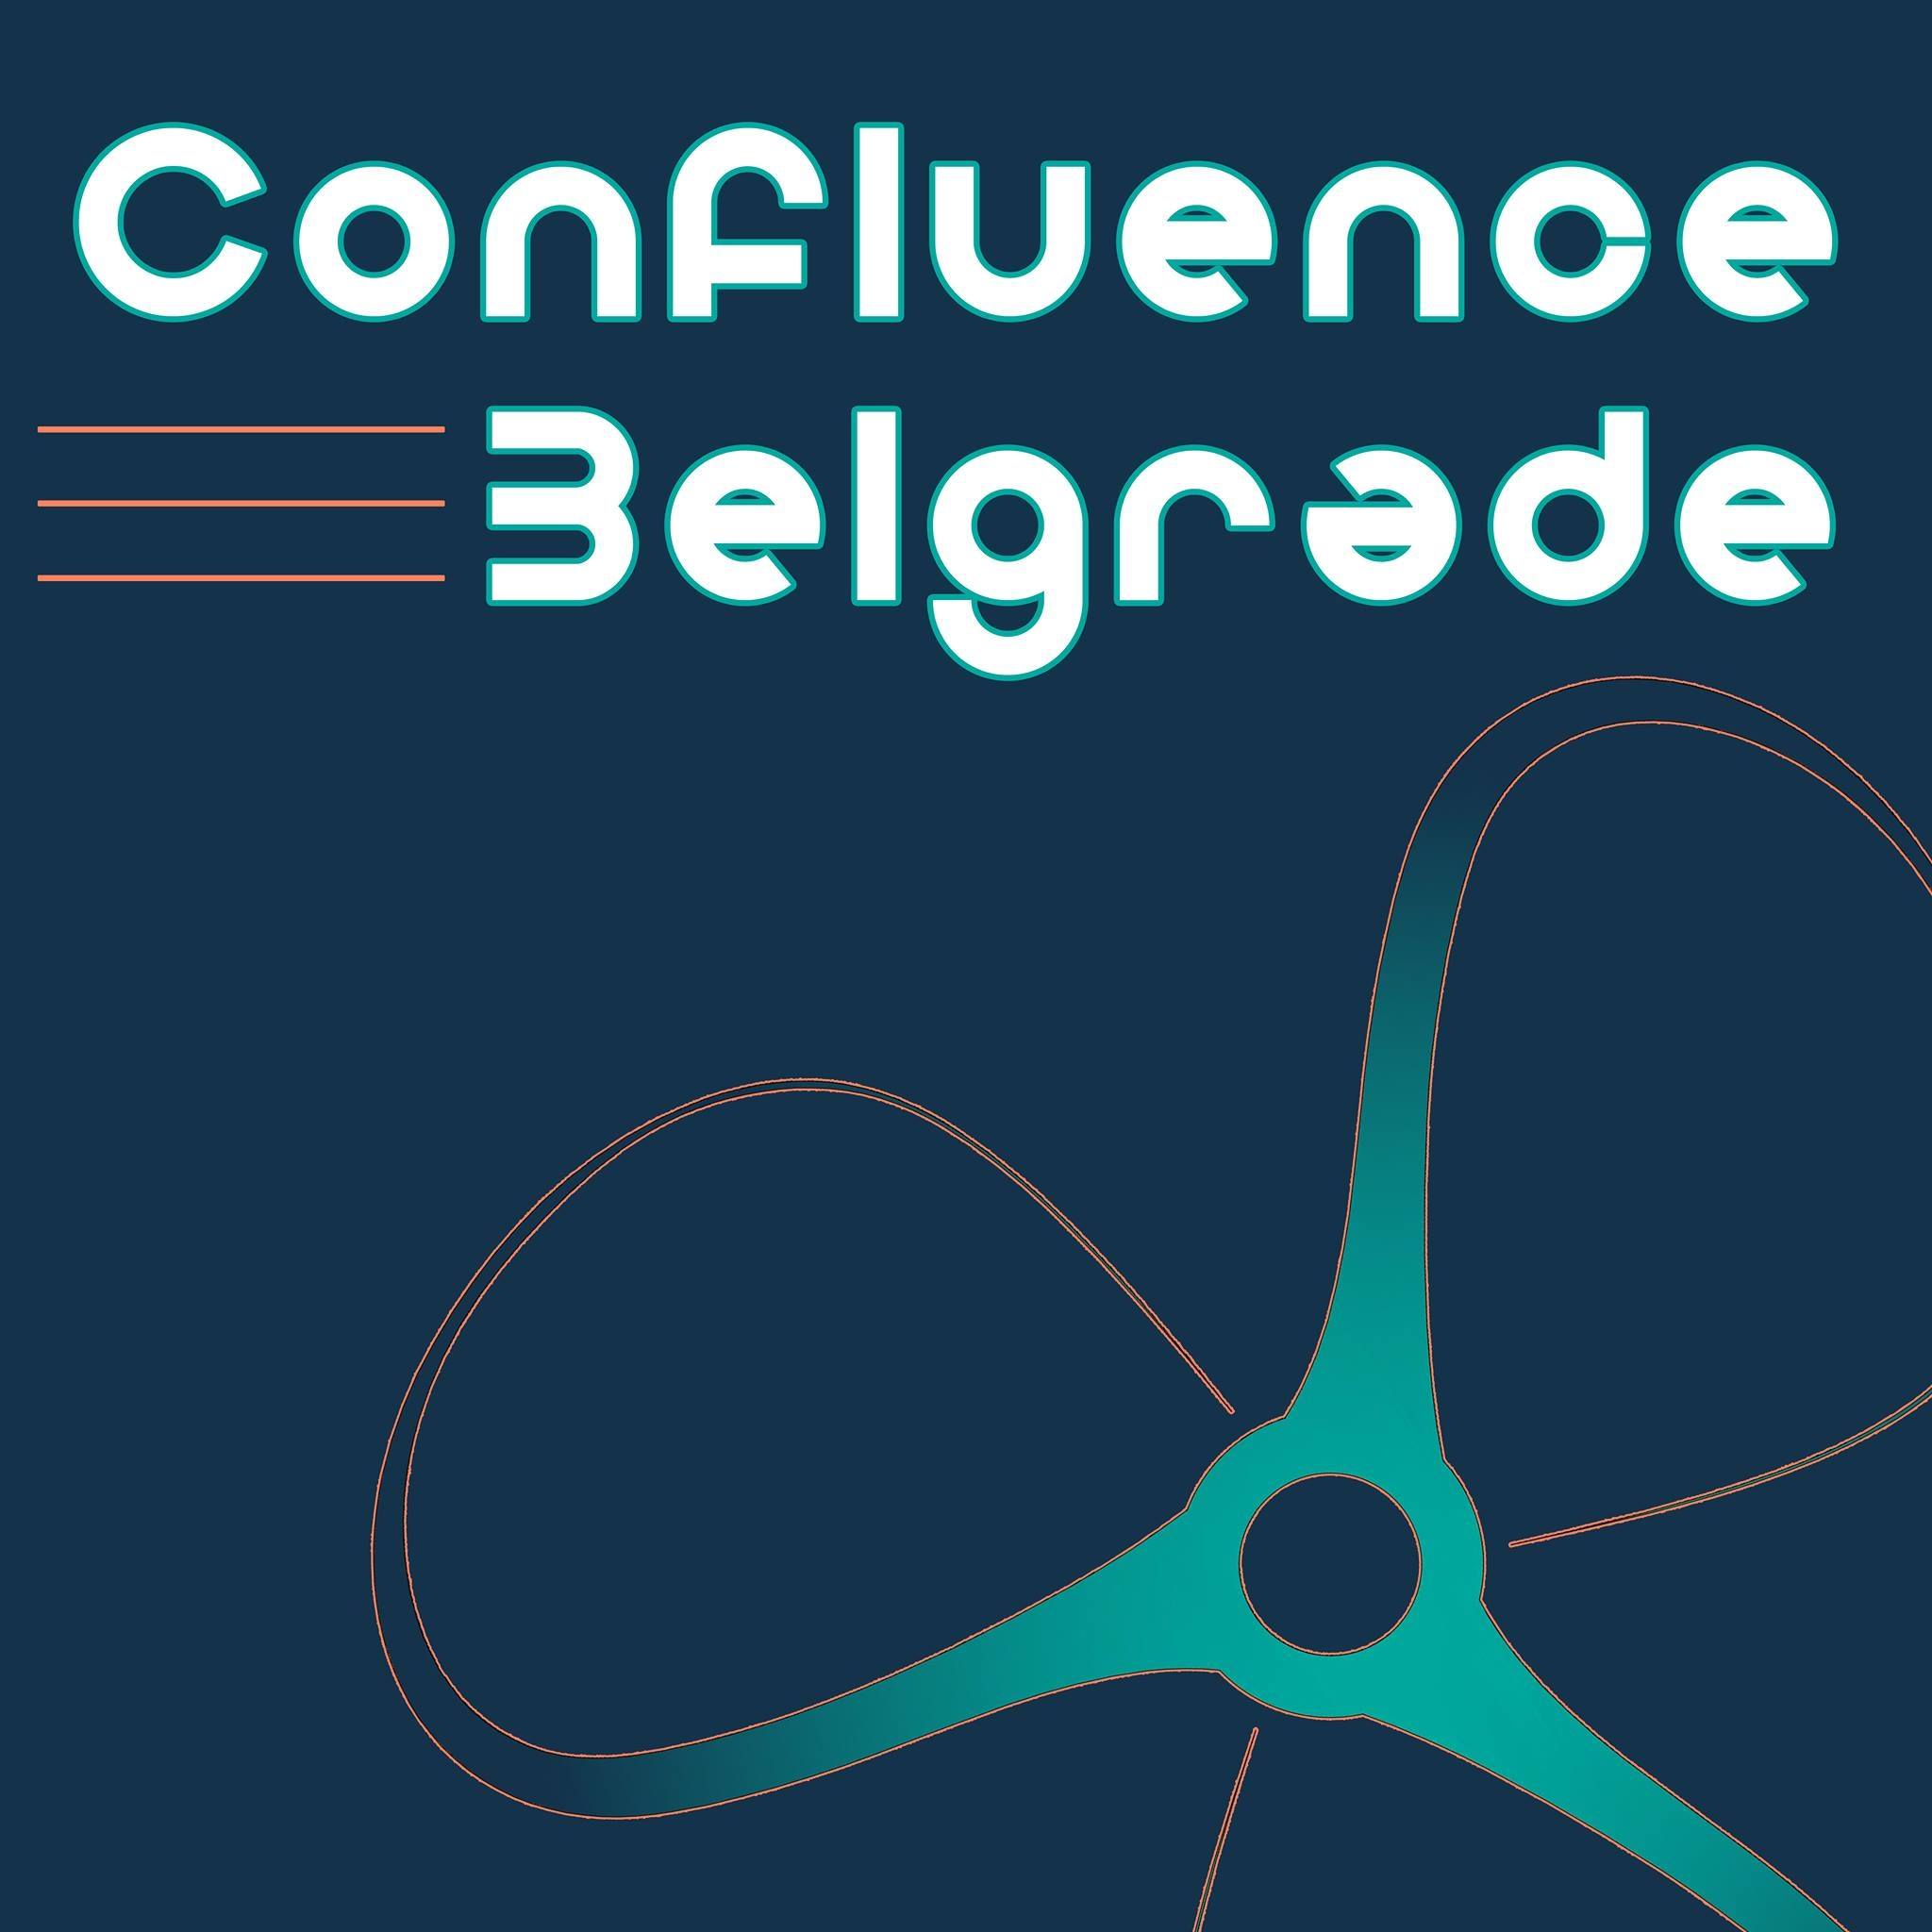 Confluence Belgrade